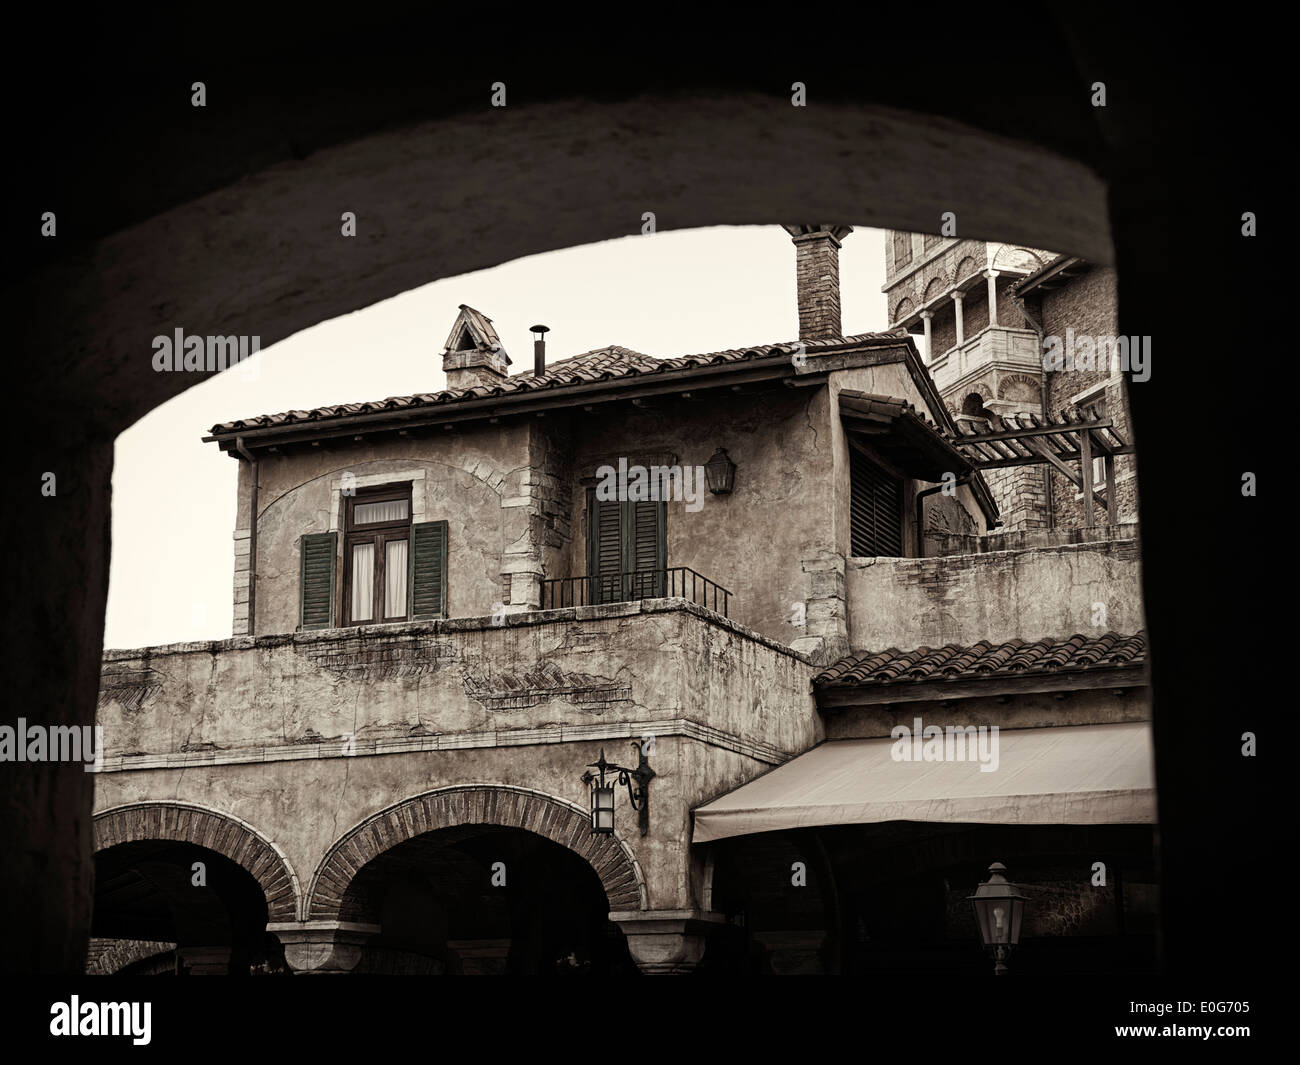 La photo artistique d'antique maison européenne sous une arche, détail architecture vénitienne, noir et blanc Sépia Banque D'Images